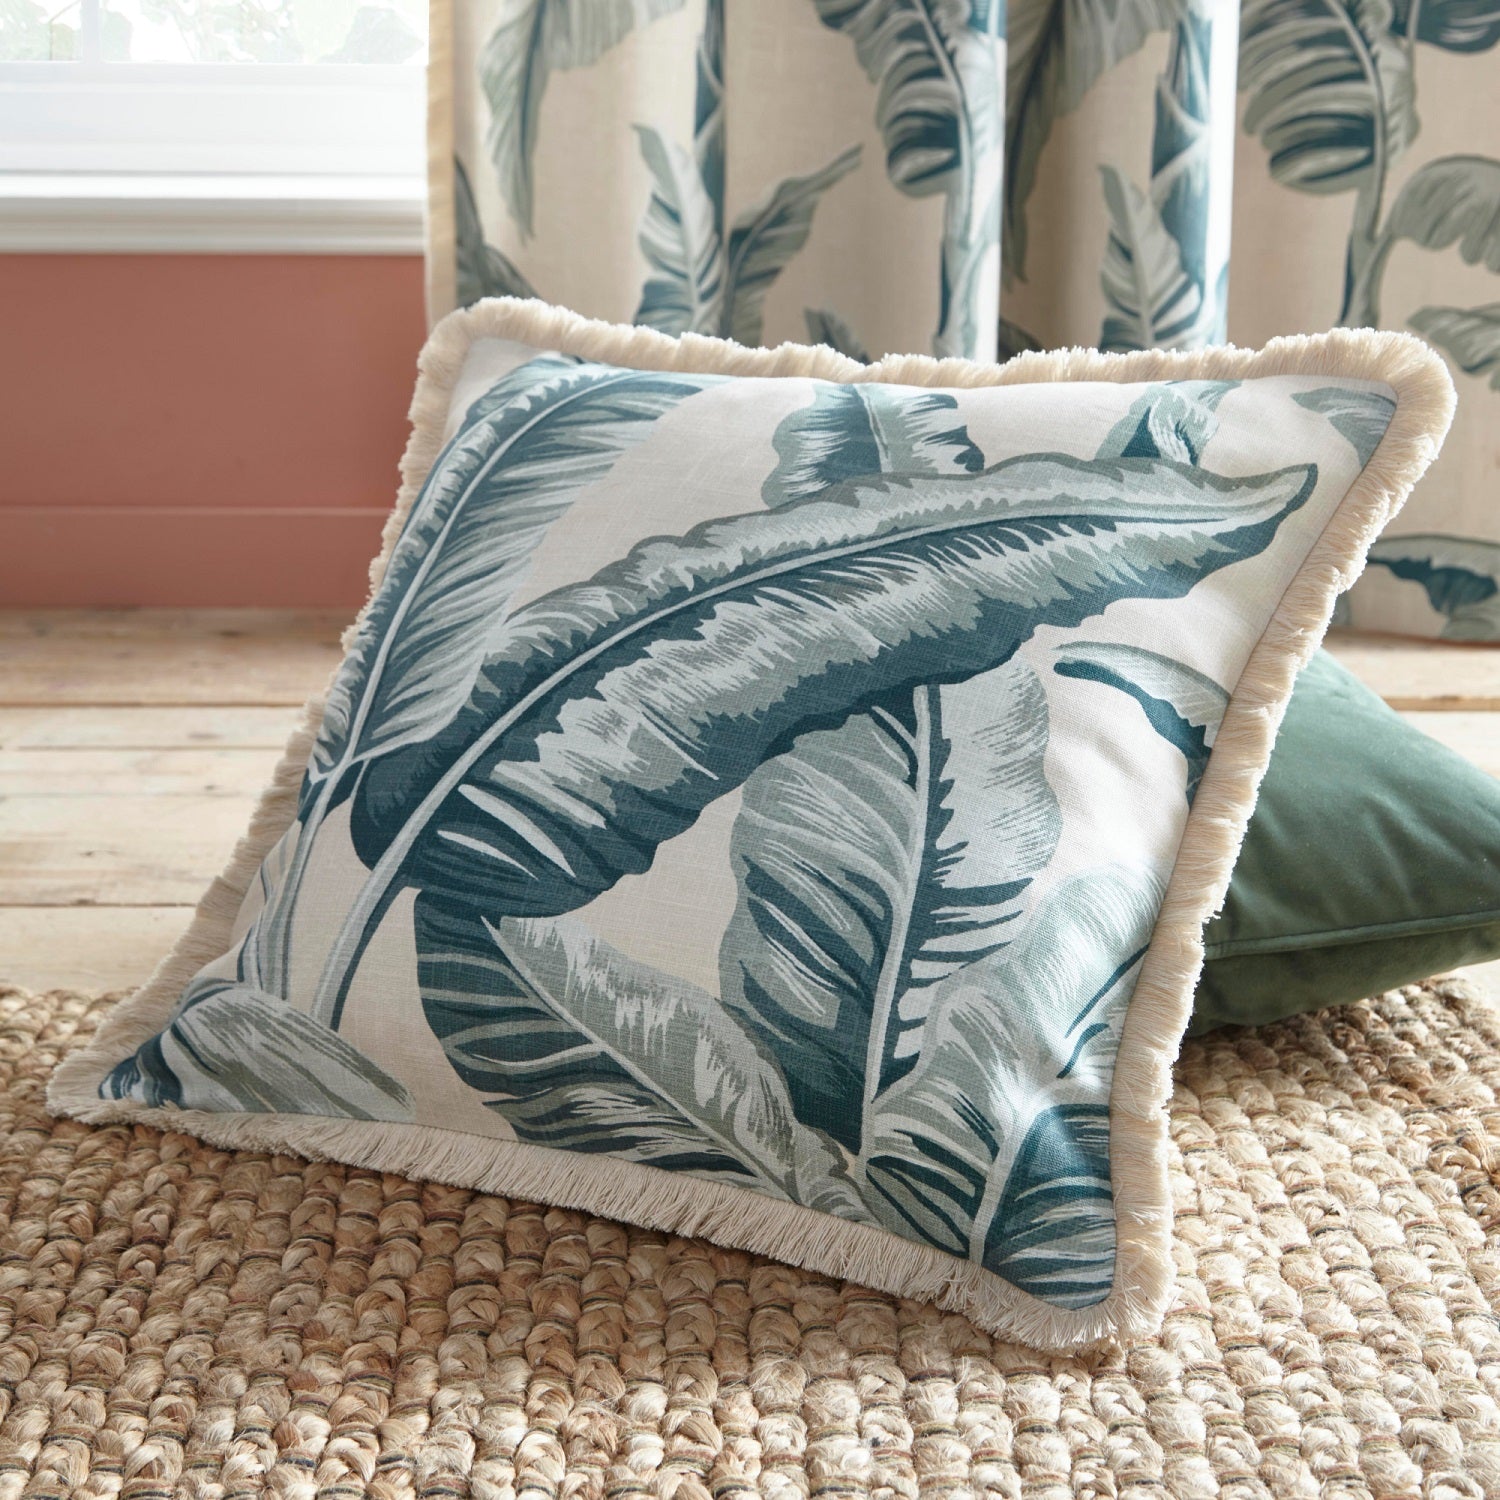 Tropical Jungle Palm Leaves Cushion Cover 43x43cm - Cadiz Teal Green